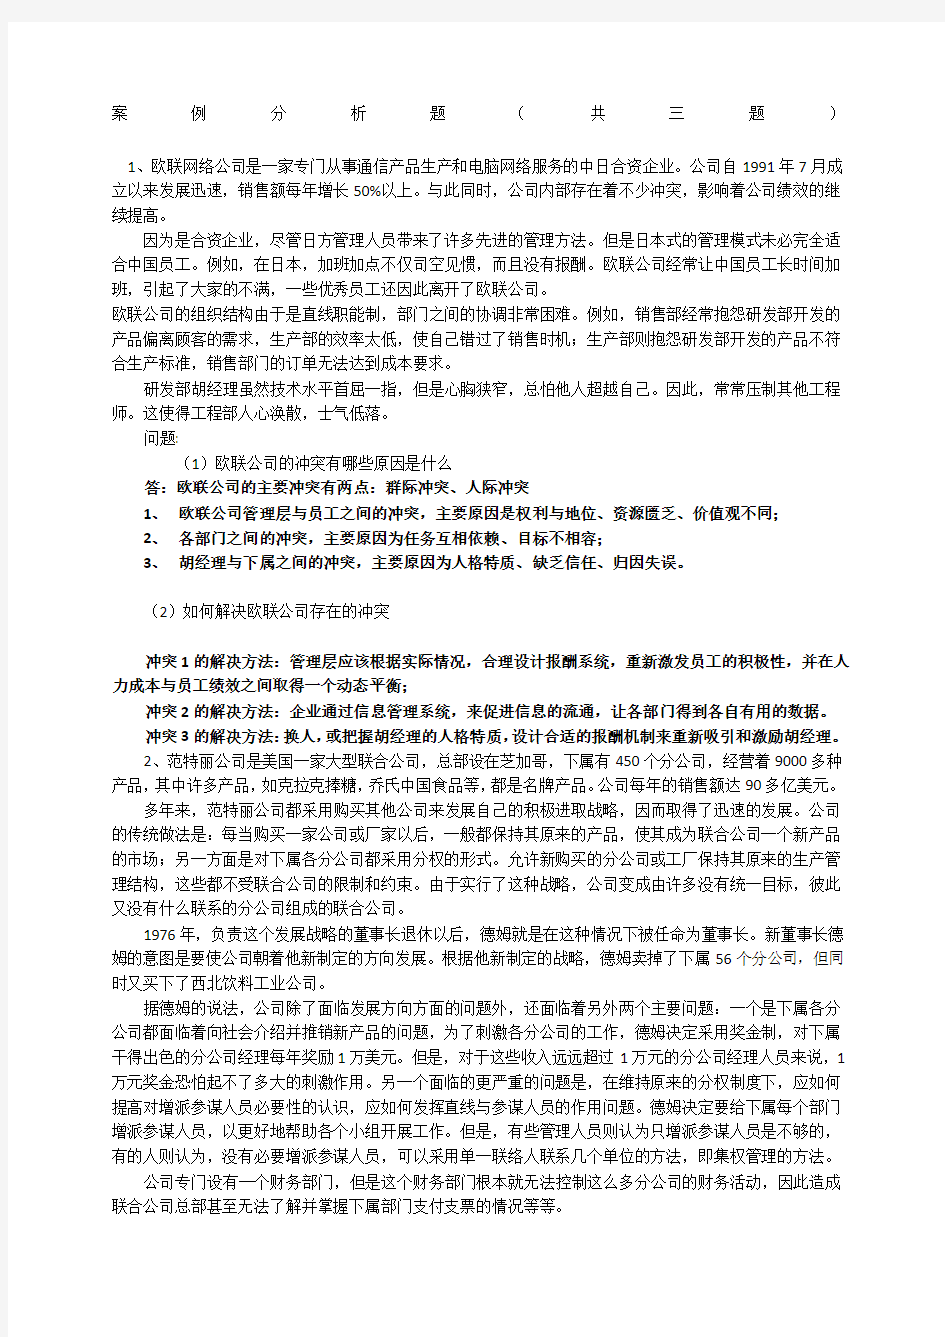 上海交通大学网络学院管理心理学大作业期末考试案例分析题